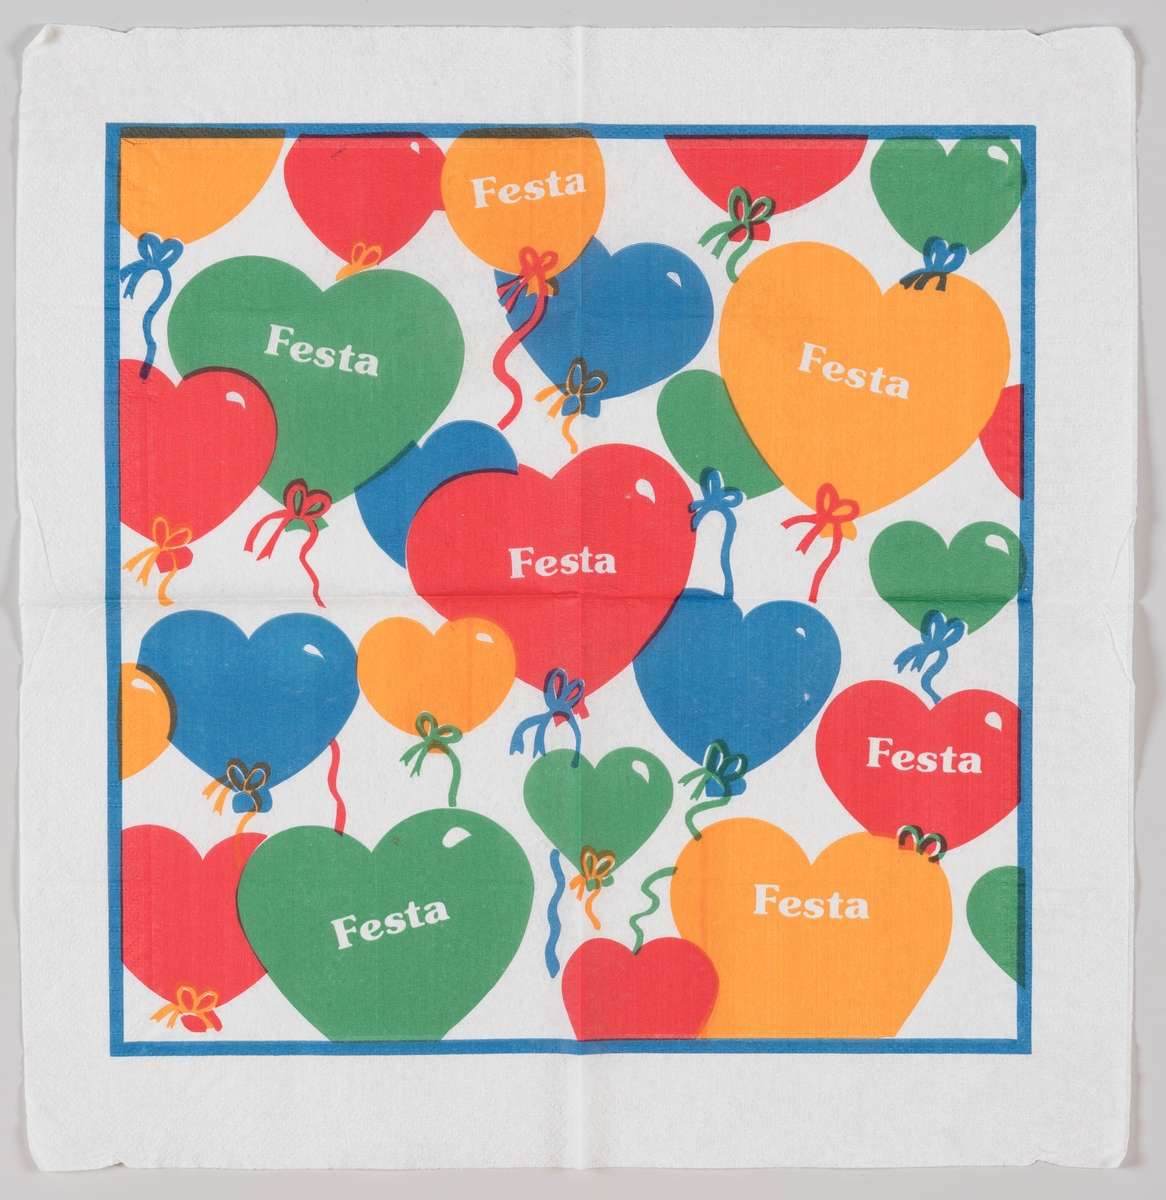 Hjerteballonger i gul, blå, rød og grønn.

Festa betyr fest og festival på portugisisk, spansk og italiensk.